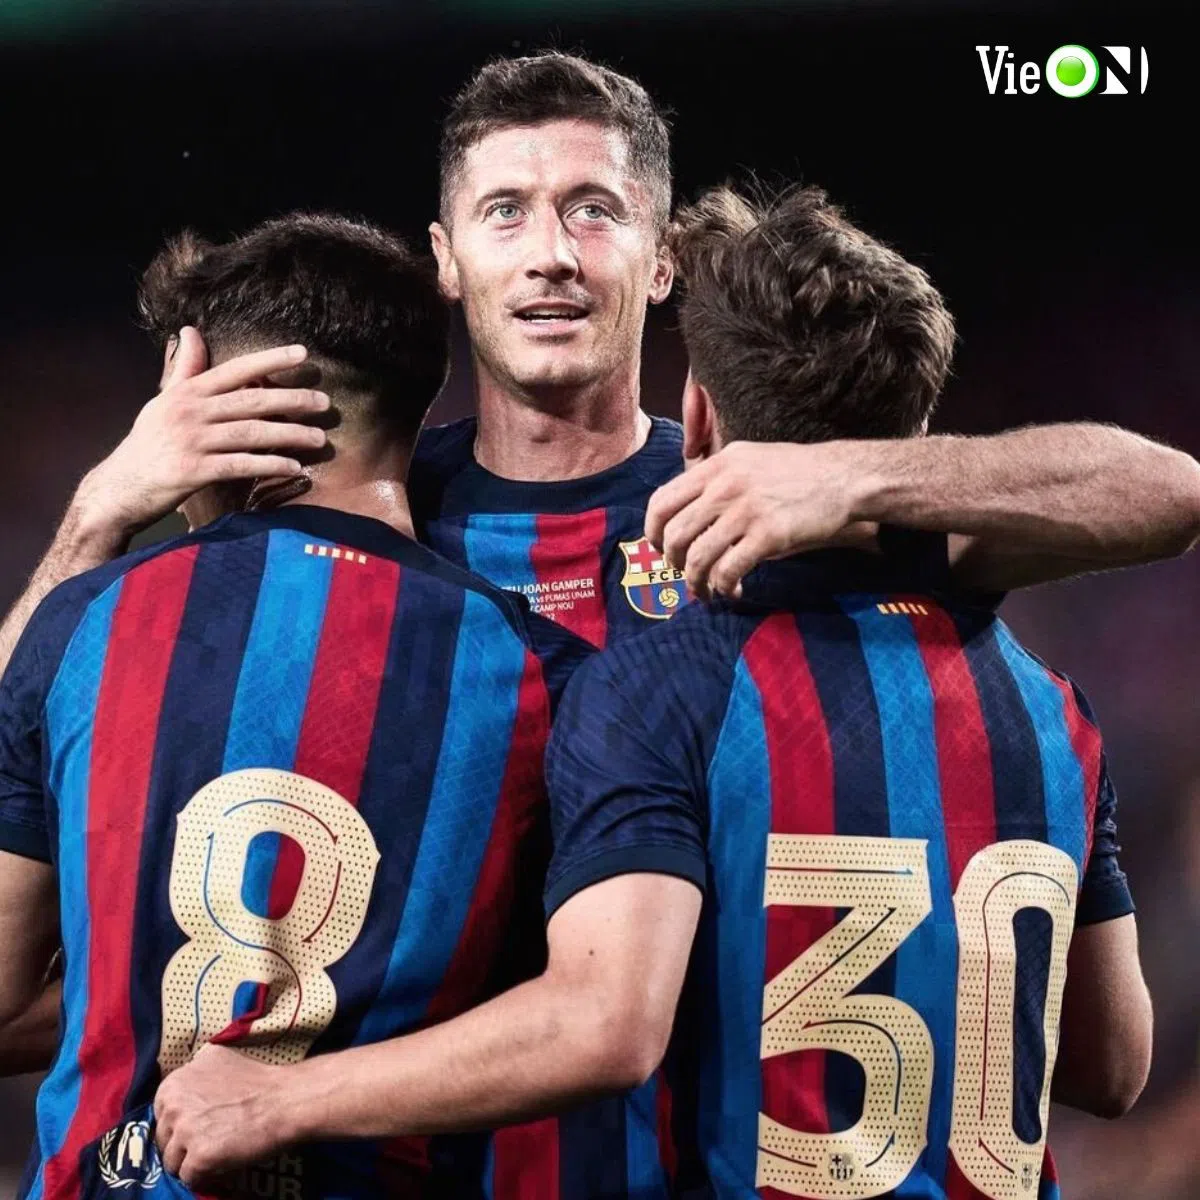 Lâm nguy ở đấu trường Champions League, Barca sẽ lại gục ngã đau đớn ở Siêu kinh điển? Tất cả đều có trên VieON! 203021